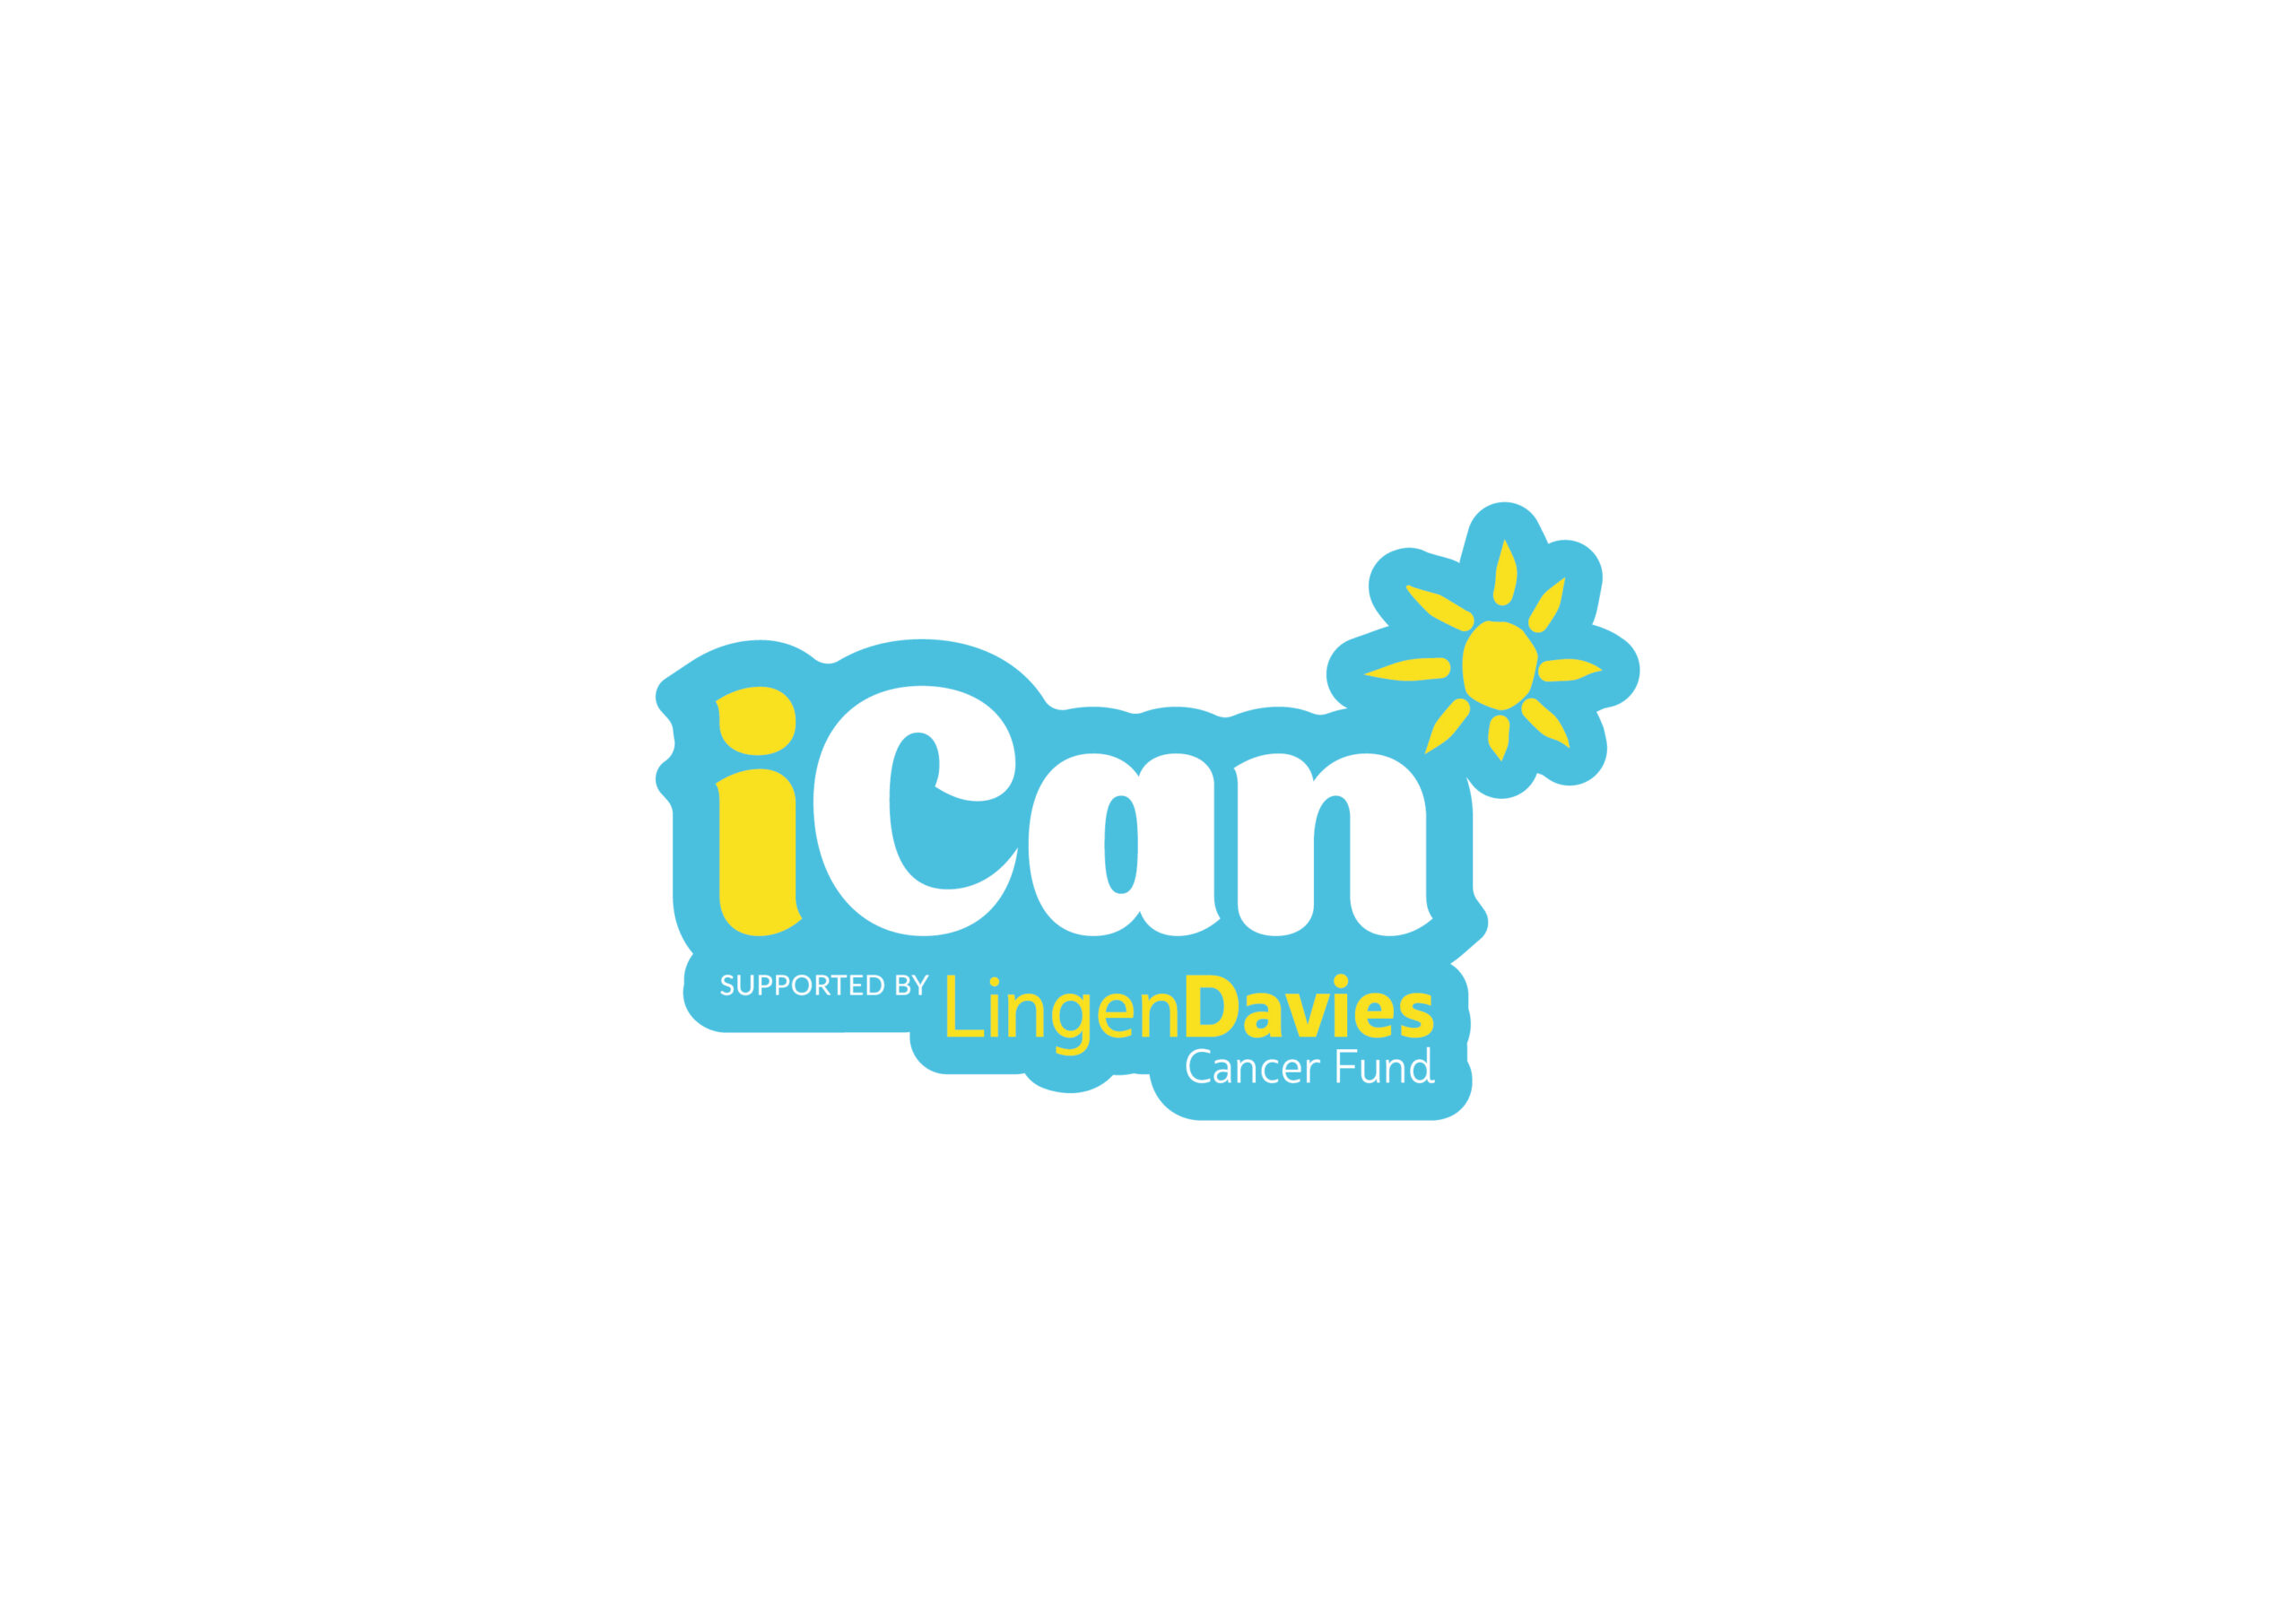 iCan | Lingen Davies